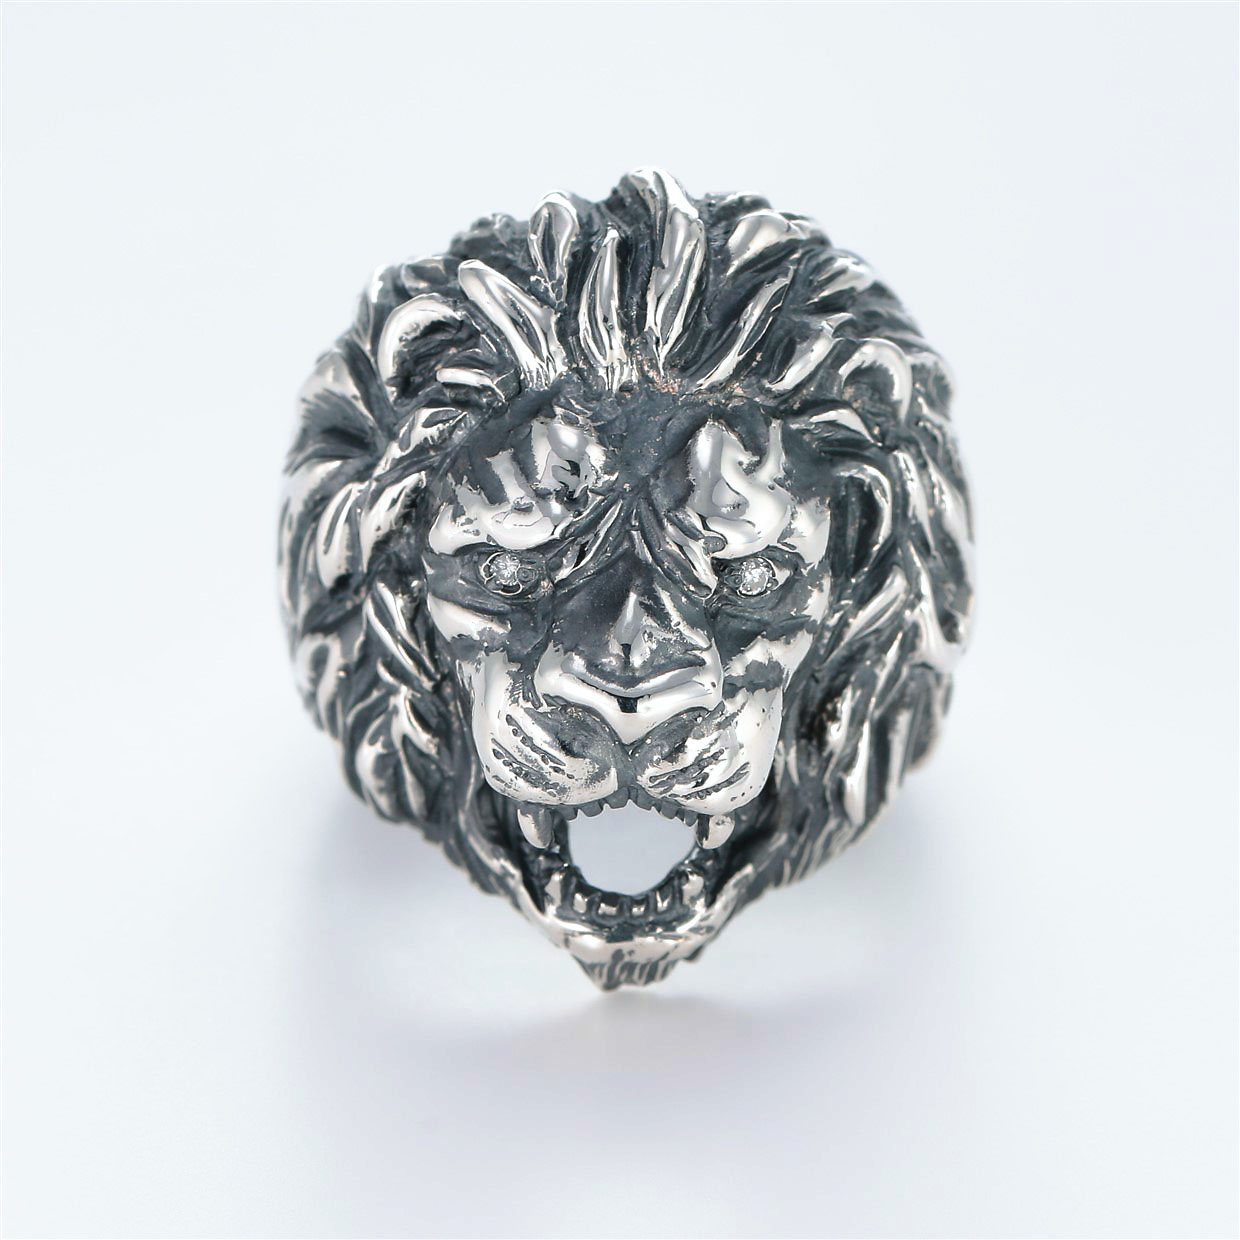 宝石ダイヤモンドを使ったアニマルのデザインが特徴的な銀風指輪の商品写真です。型番：GP101001-01 画像その1